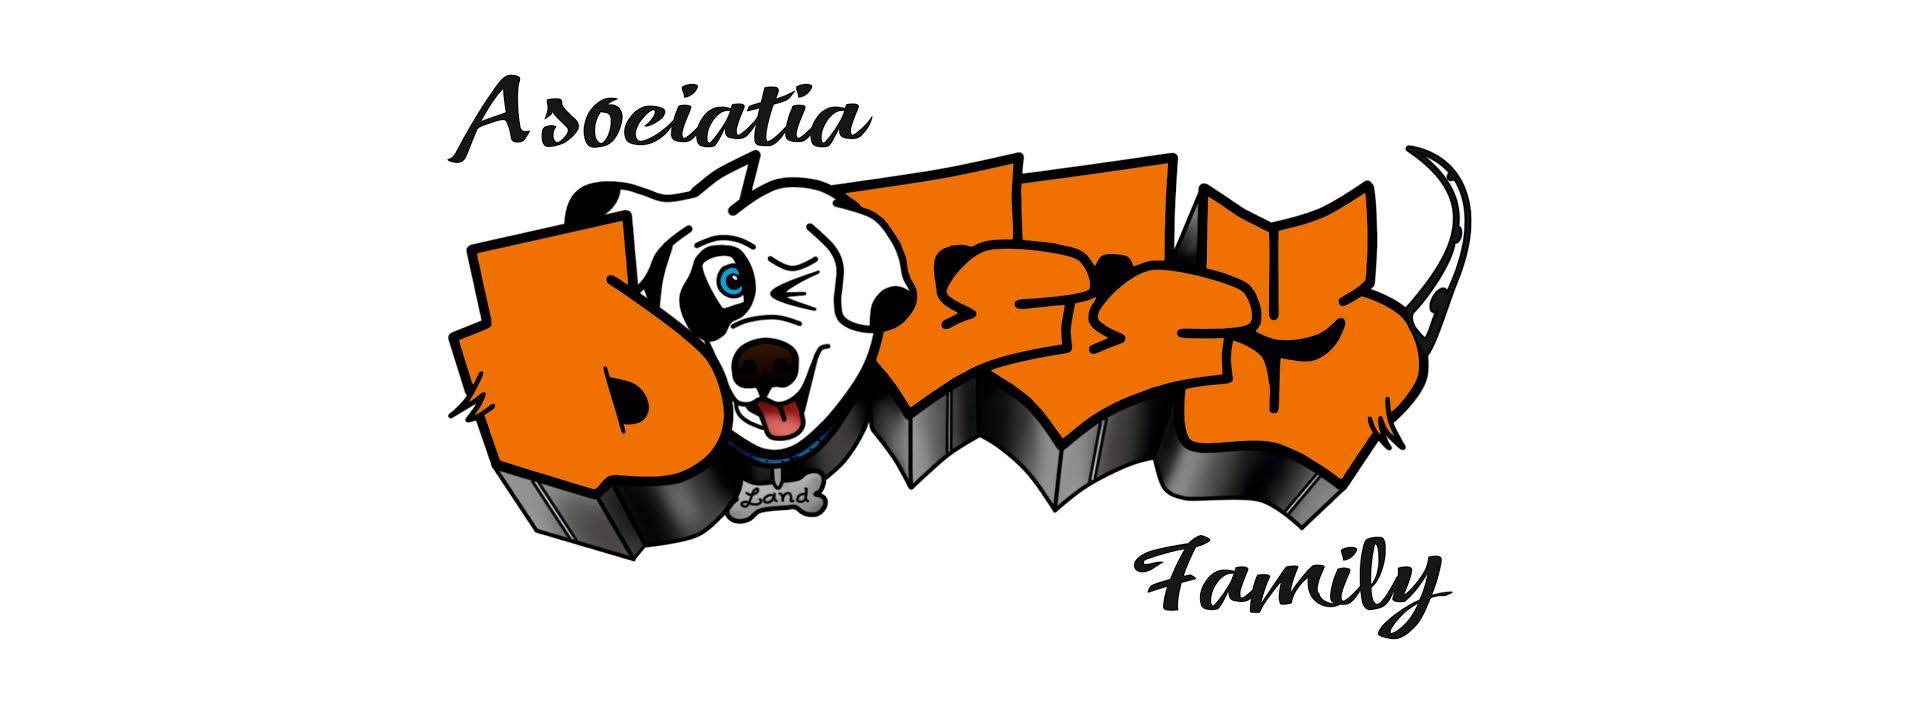 Asociatia DoggyLand Family logo